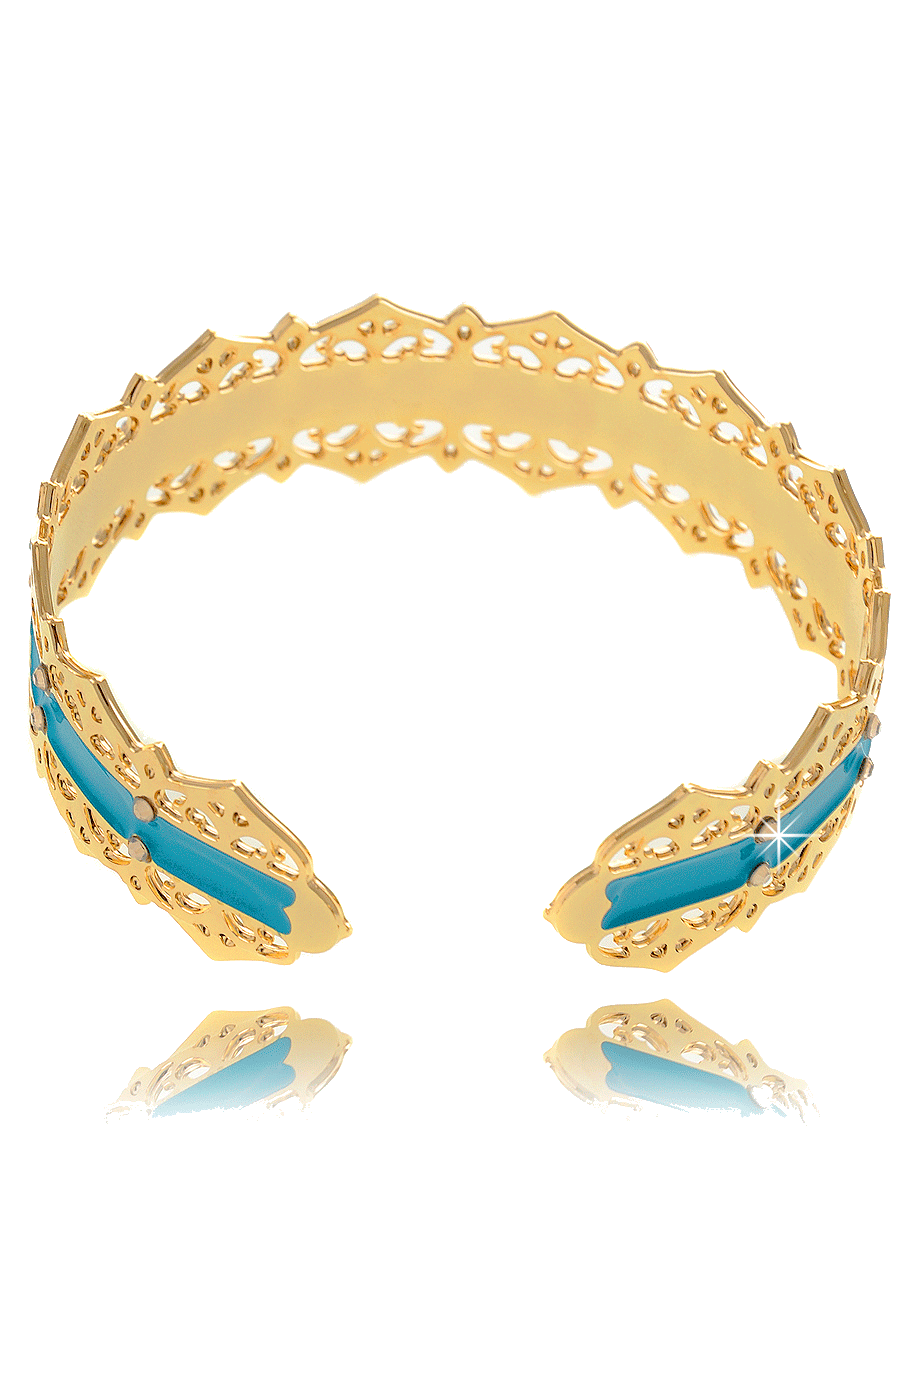 Χρυσό Τιρκουάζ Βραχιόλι - Lk Designs | Κοσμήματα